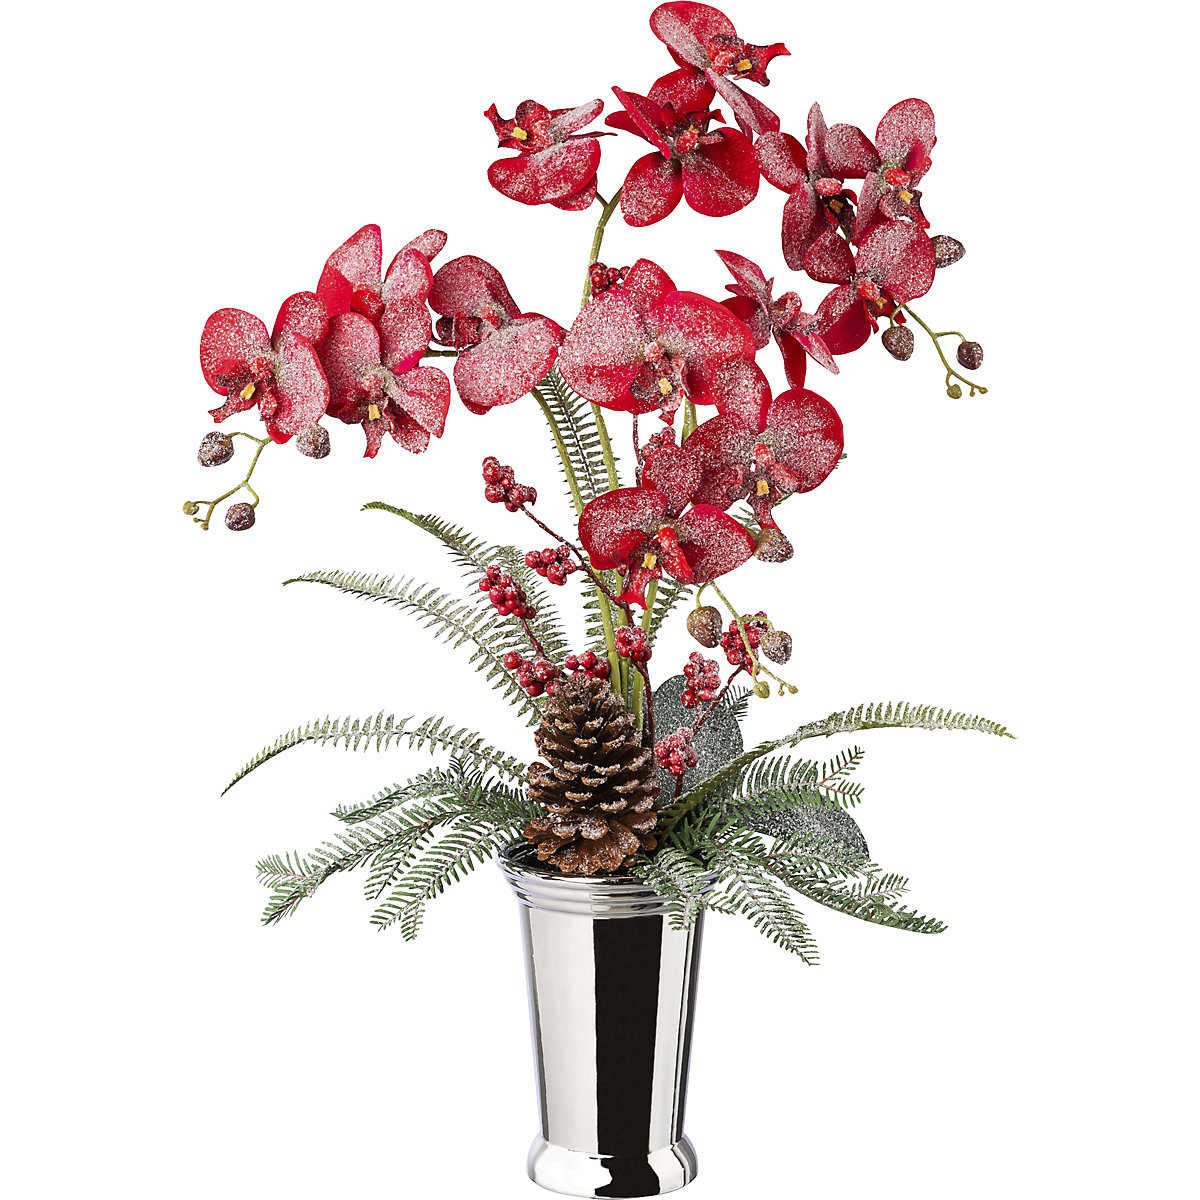 Phalaenopsis arrangement in a ceramic vase